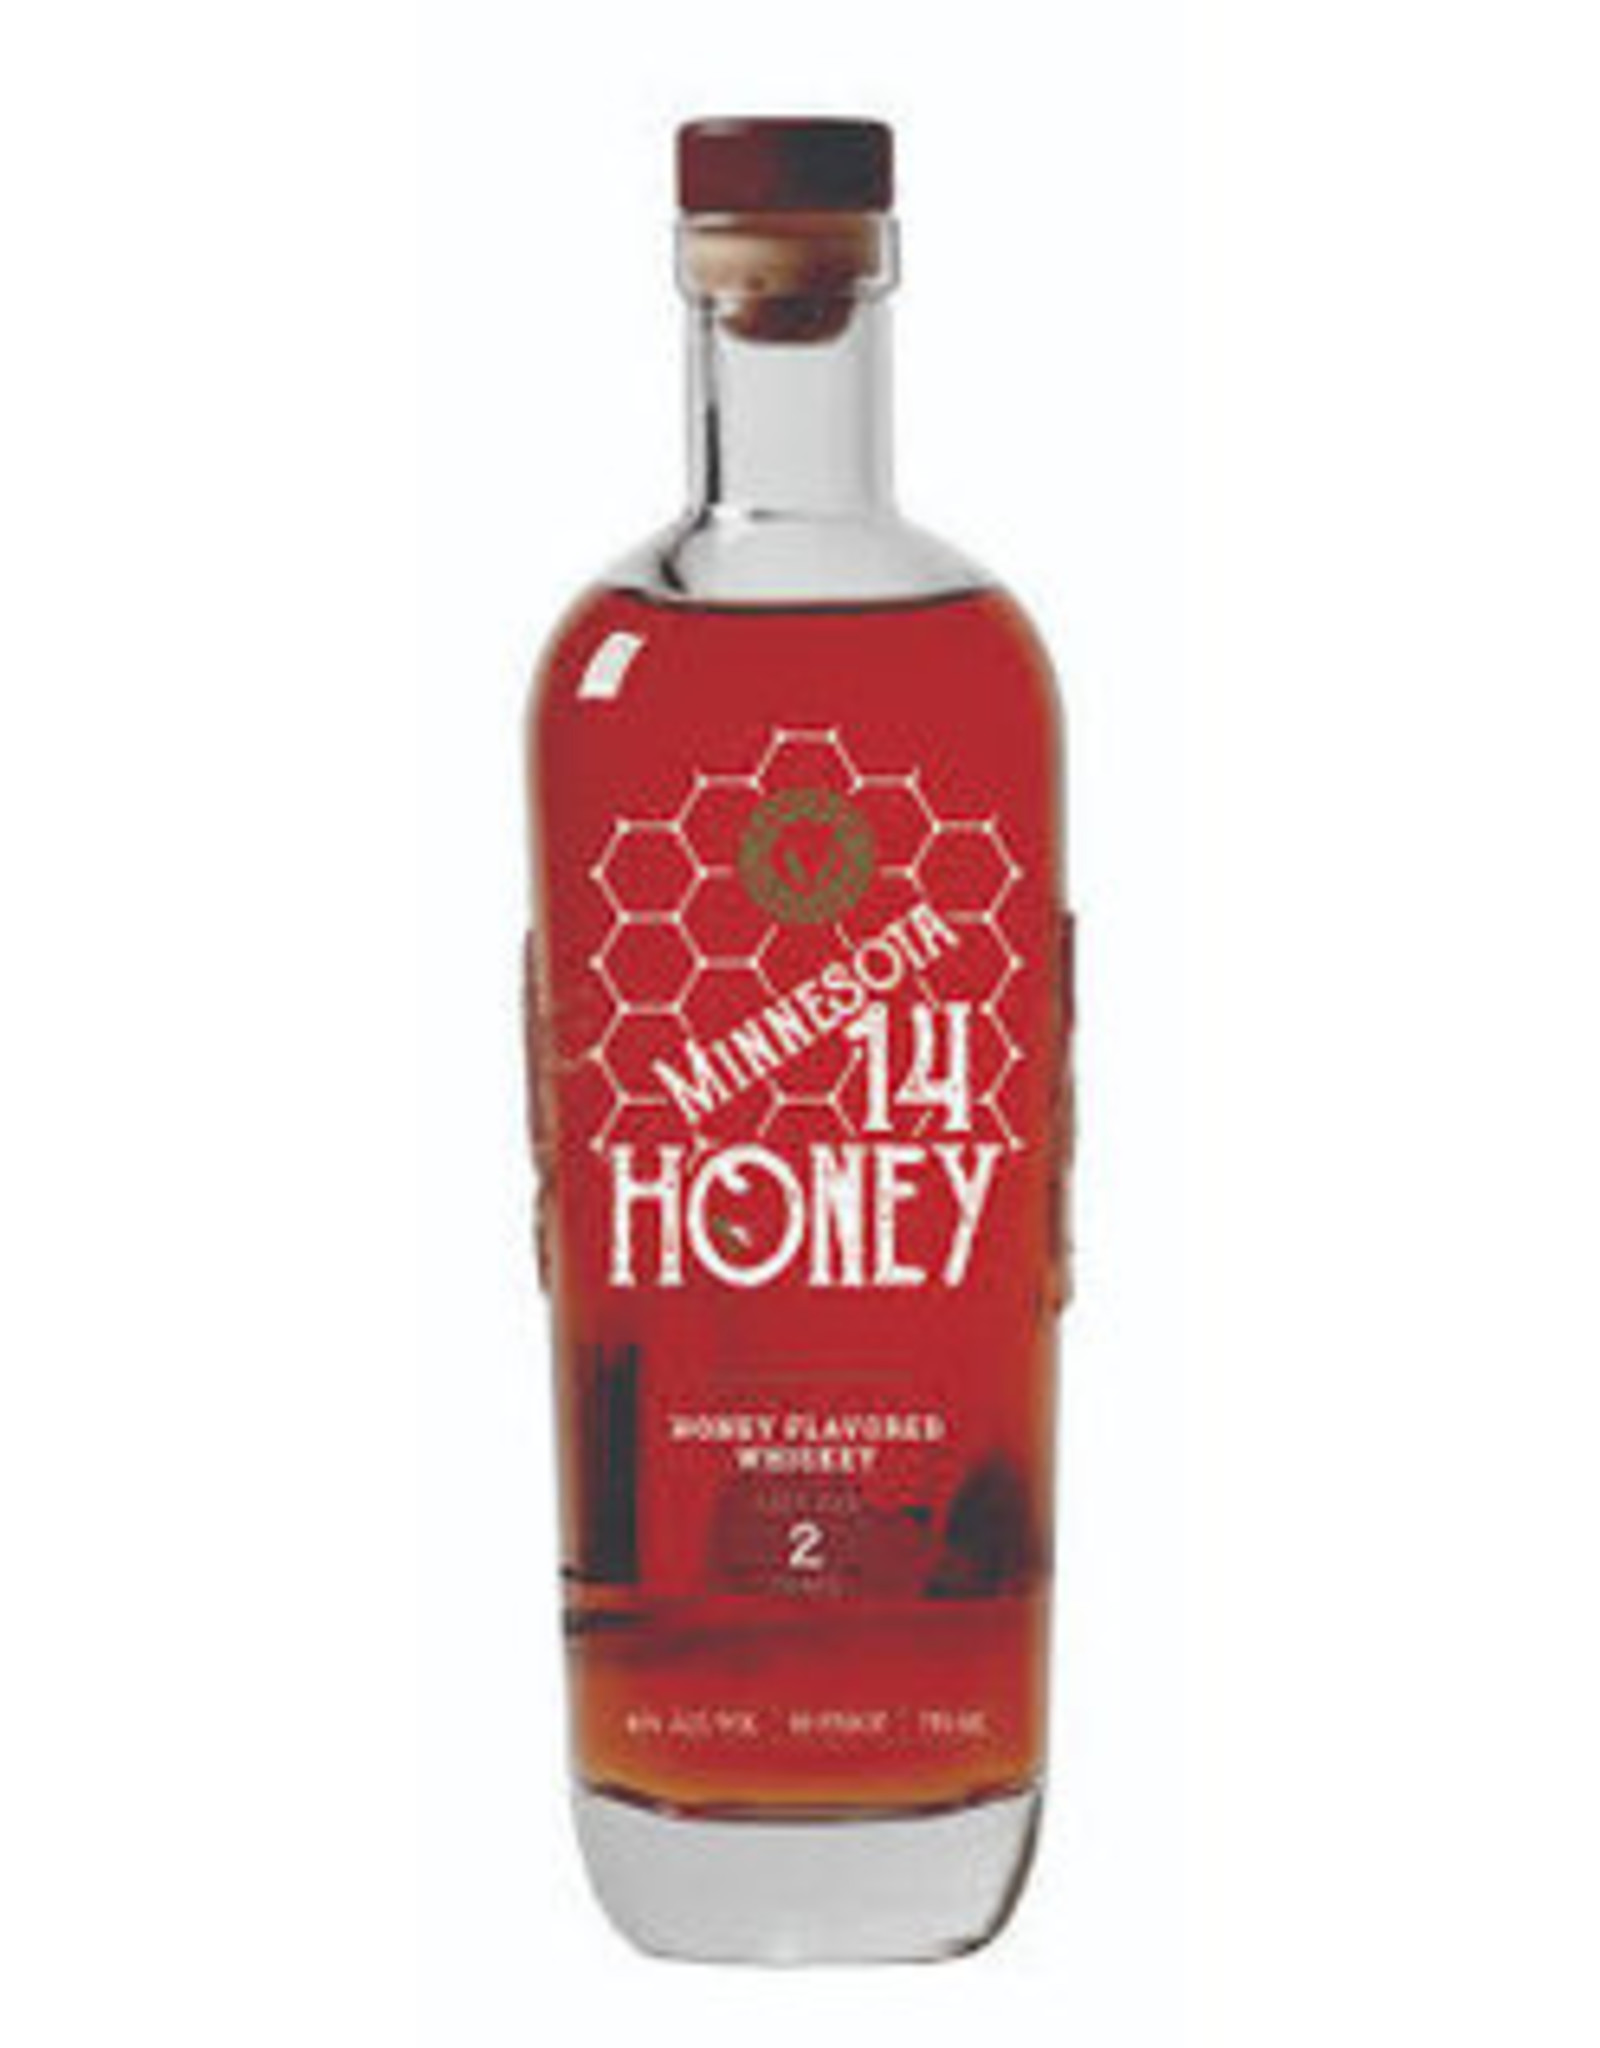 Panther Mn 14 Honey Whiskey